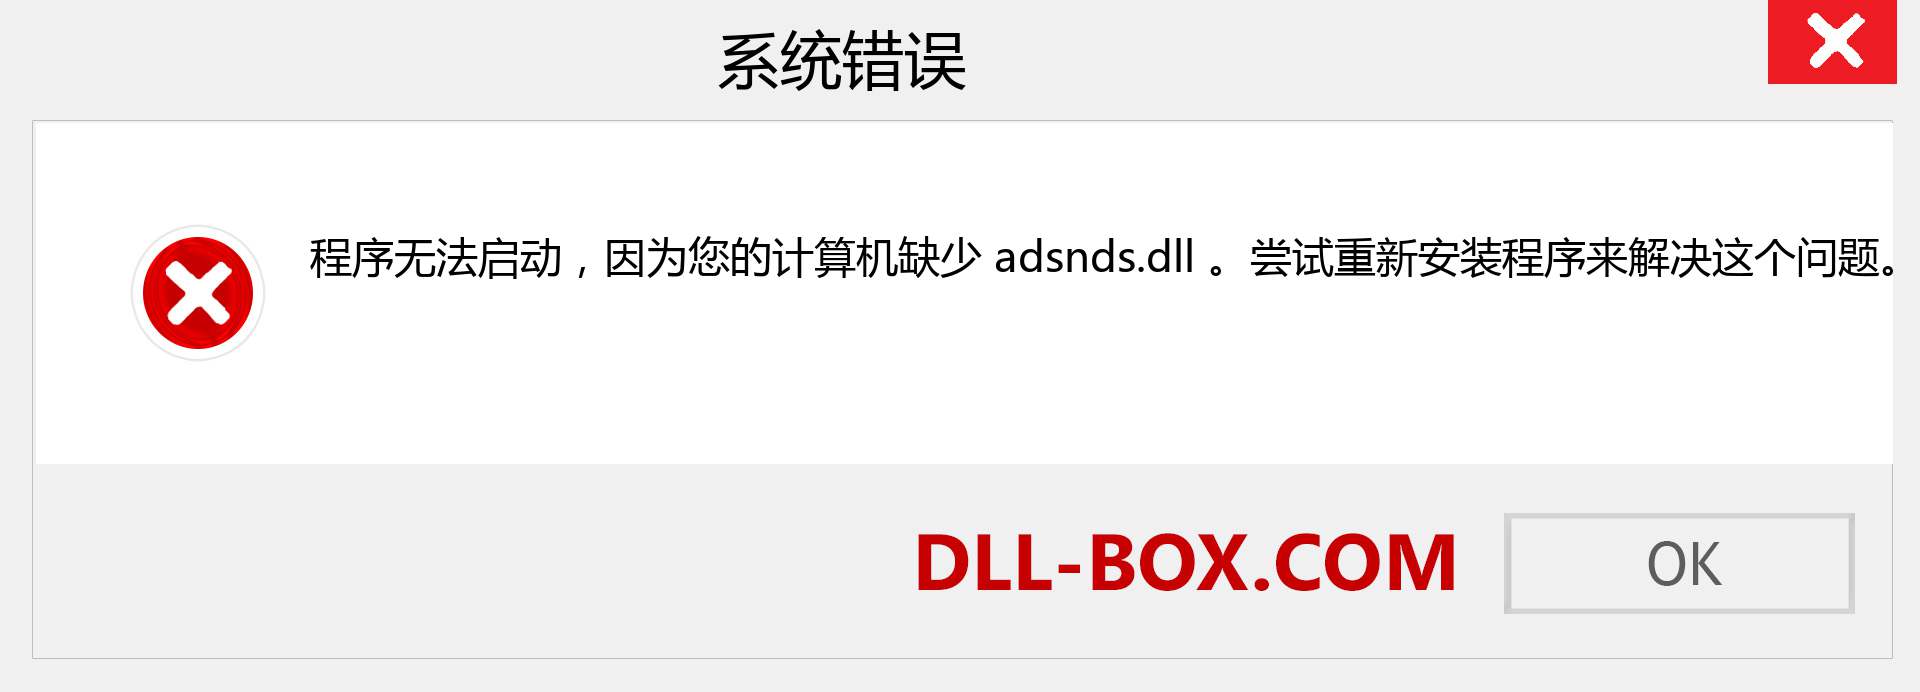 adsnds.dll 文件丢失？。 适用于 Windows 7、8、10 的下载 - 修复 Windows、照片、图像上的 adsnds dll 丢失错误